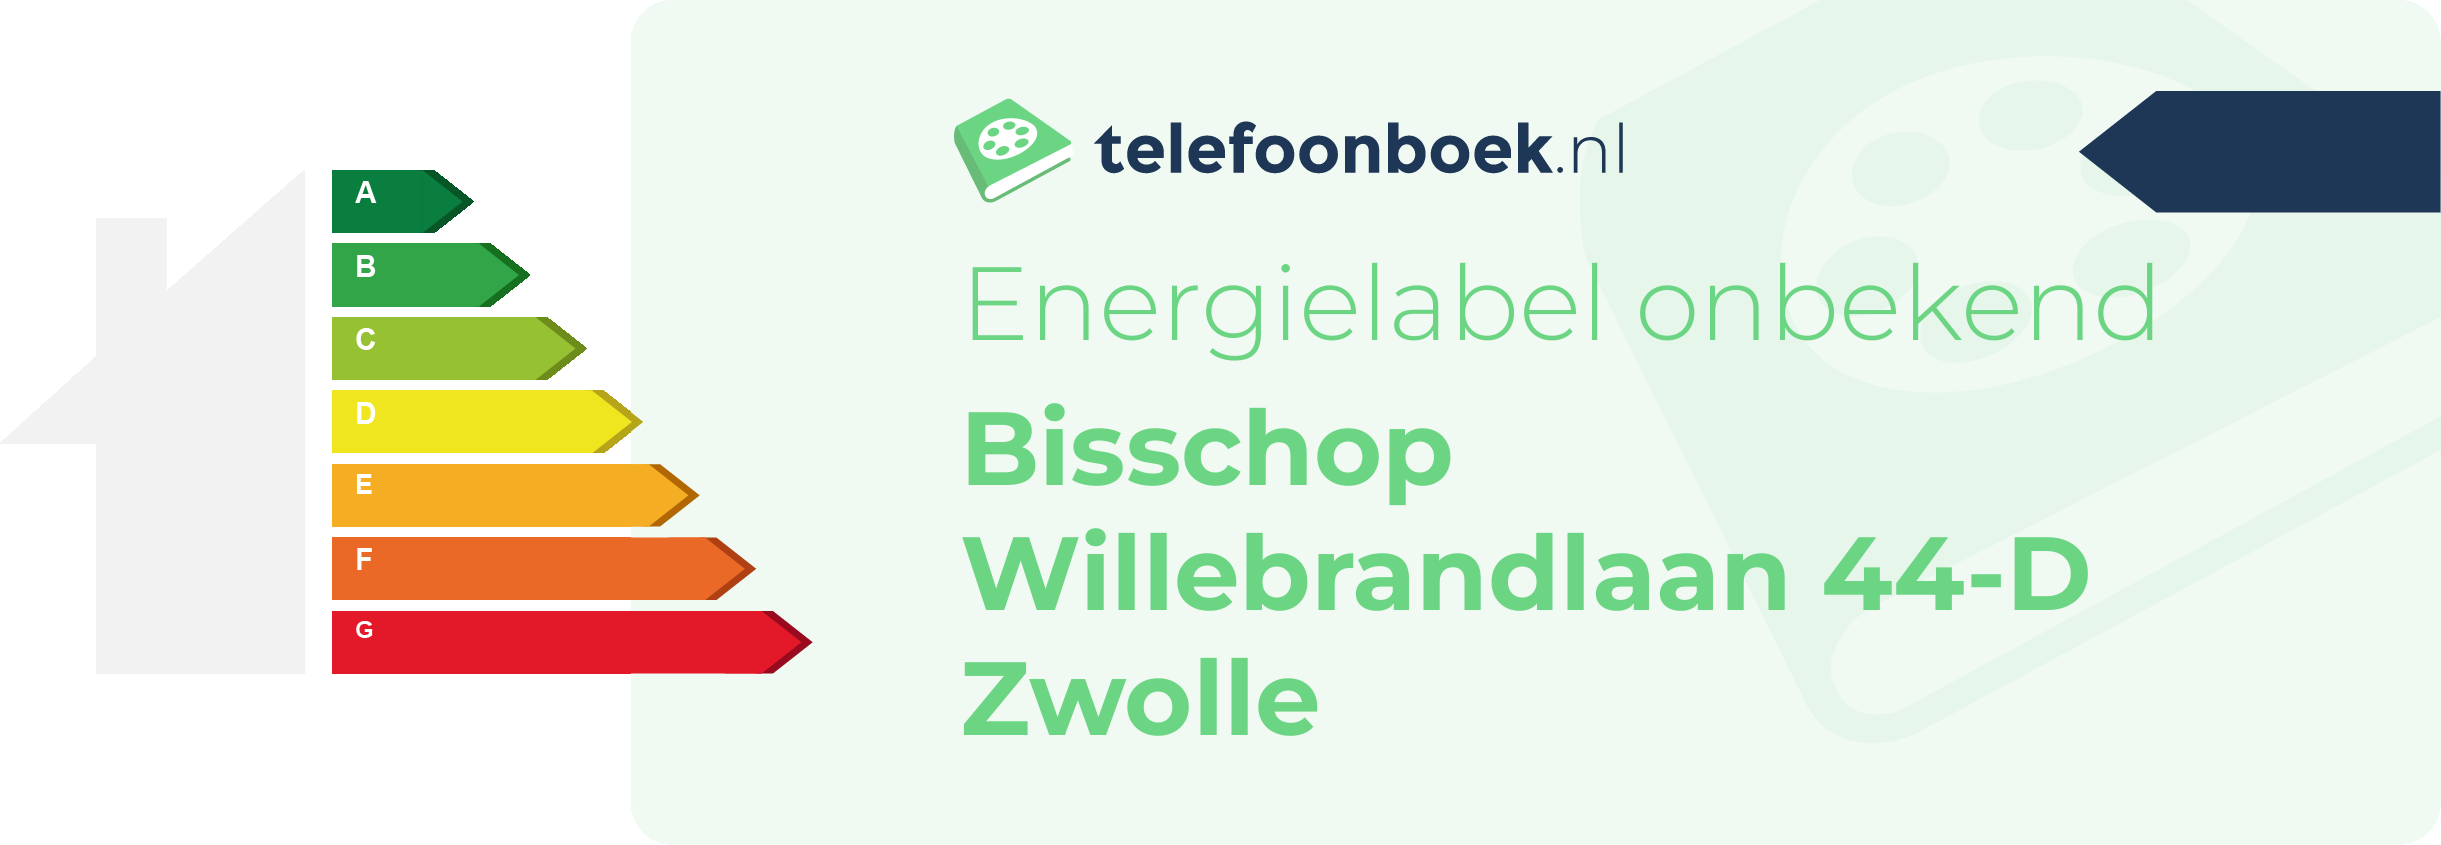 Energielabel Bisschop Willebrandlaan 44-D Zwolle